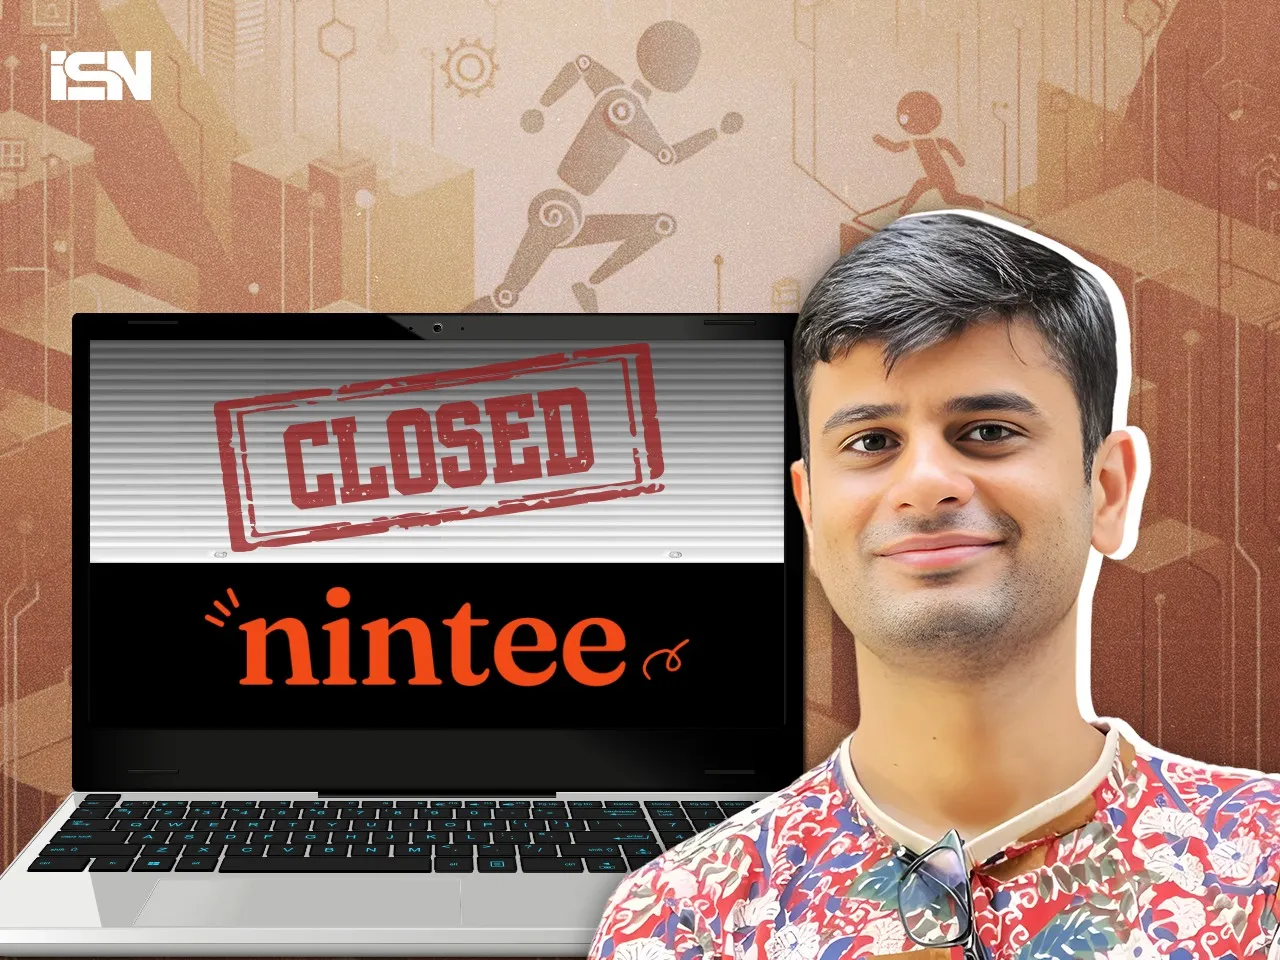 Nintee shuts down